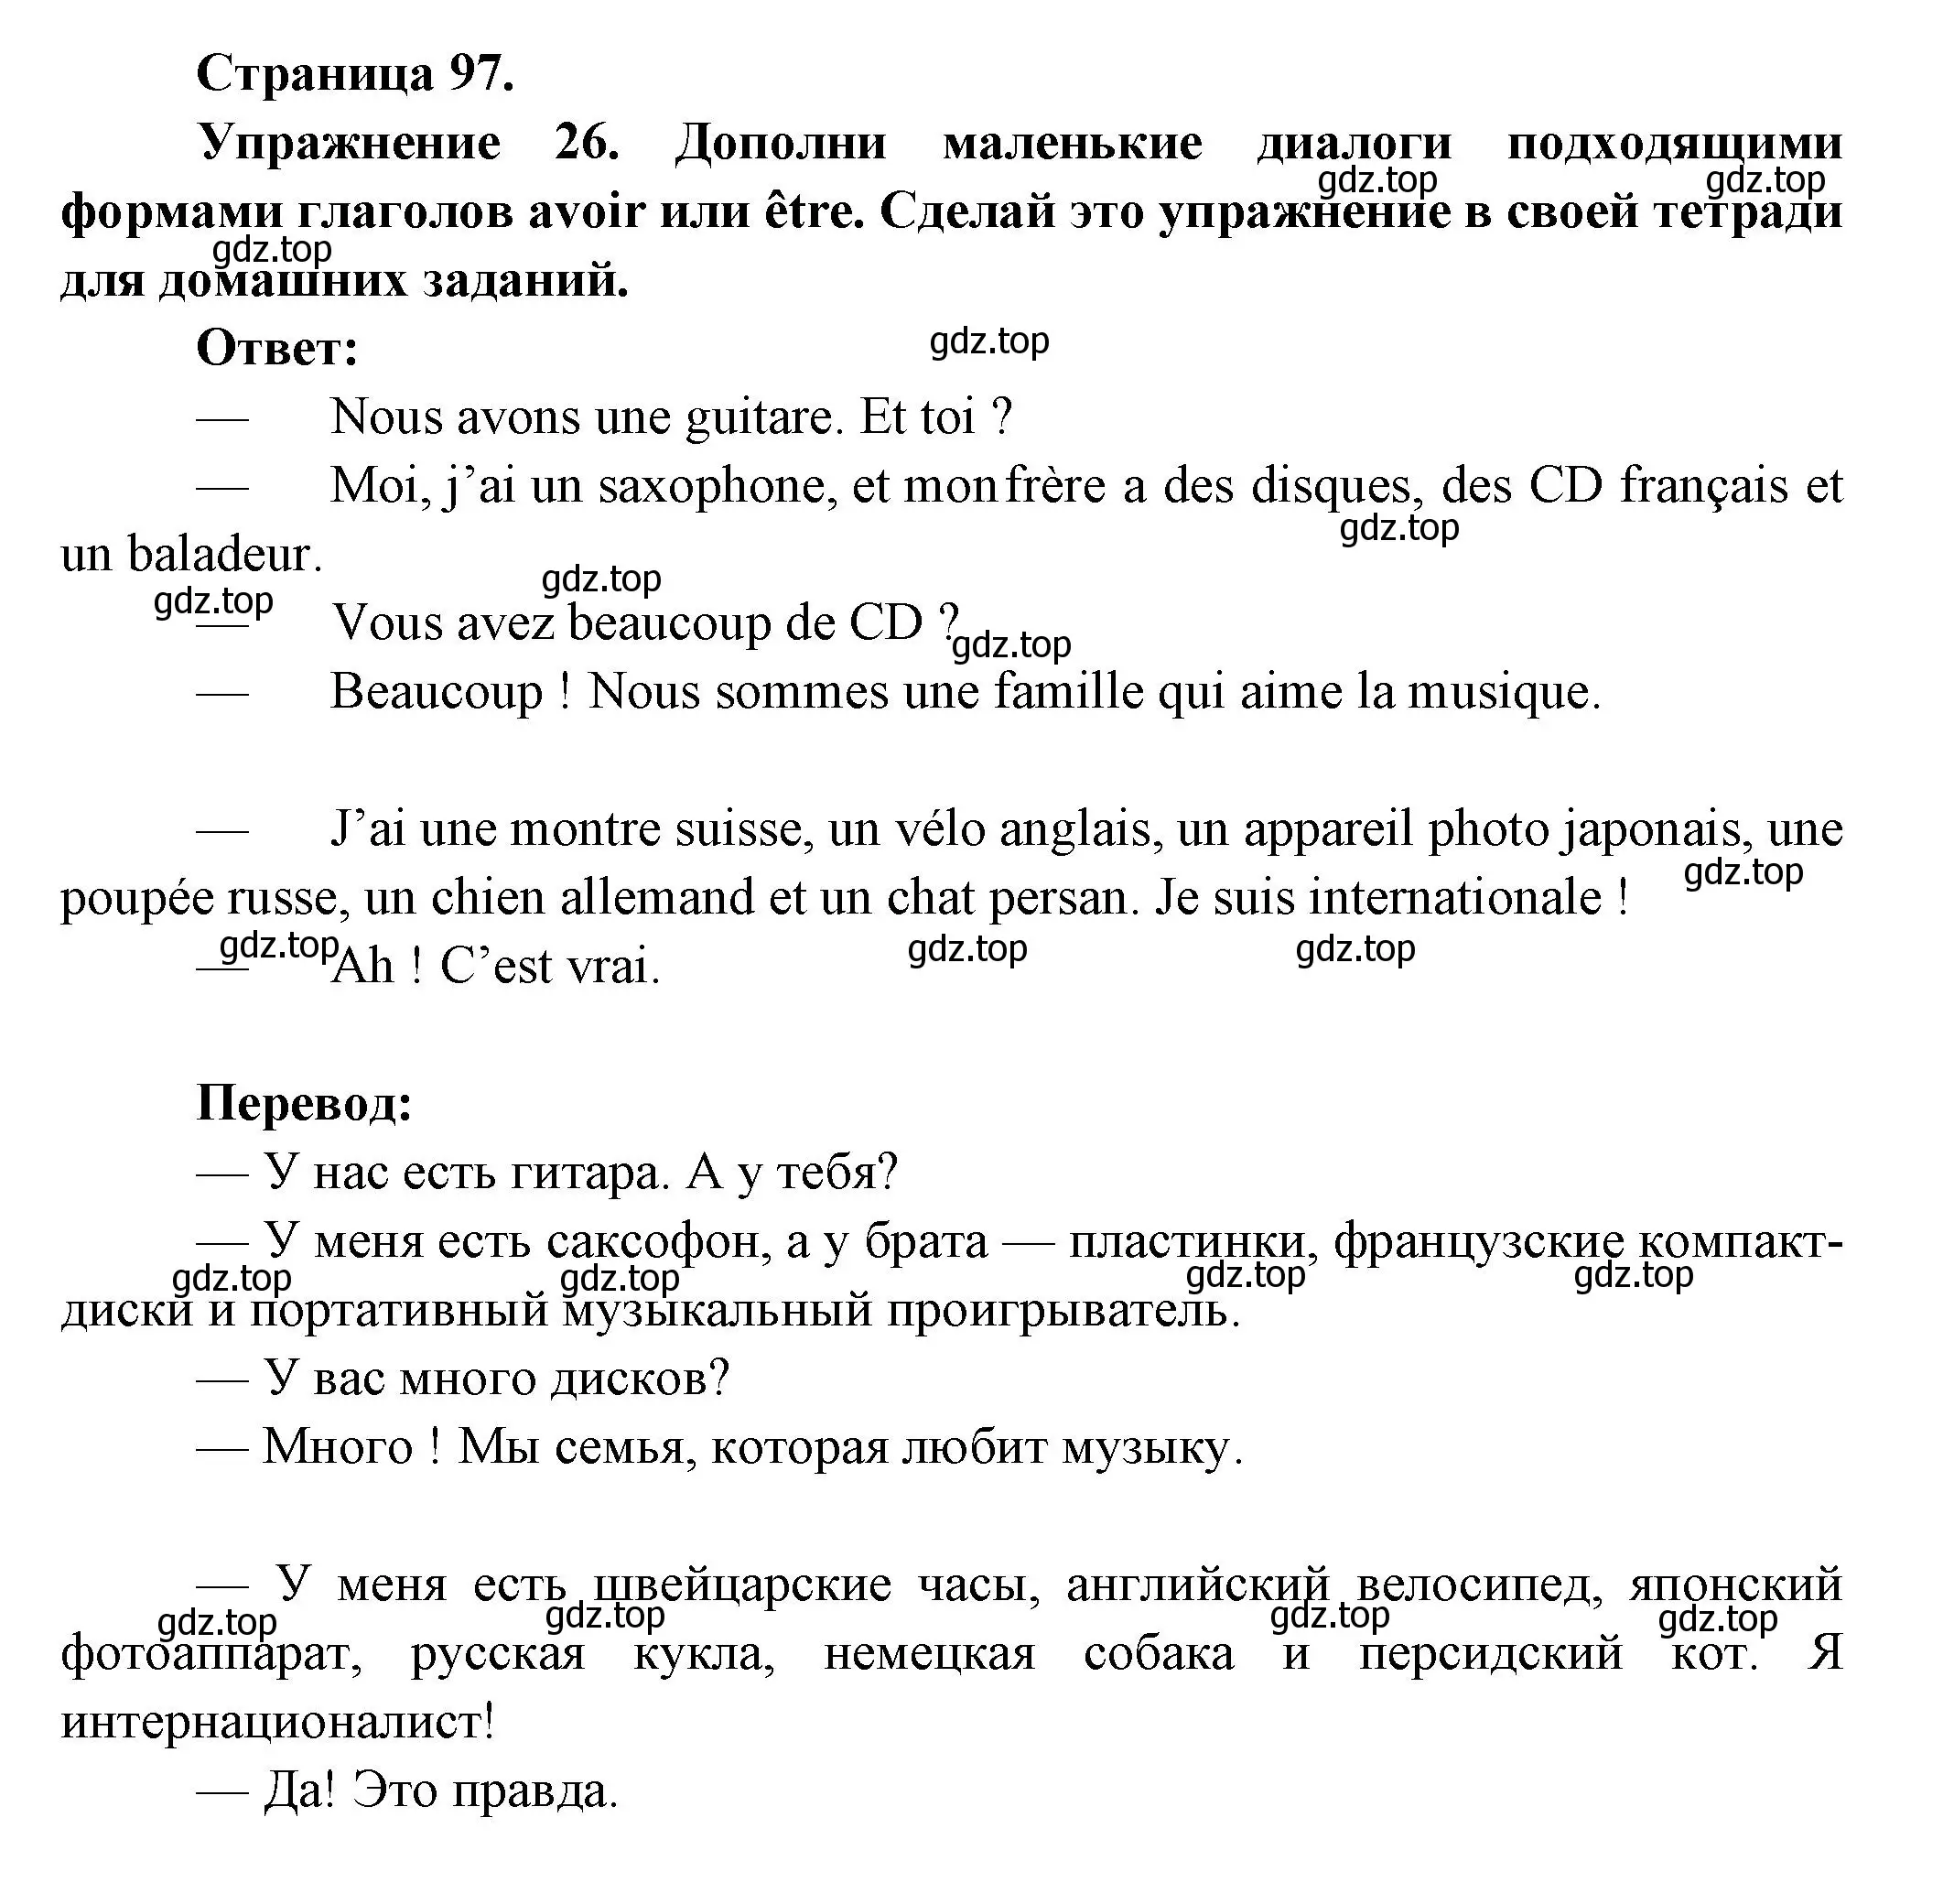 Решение номер 26 (страница 97) гдз по французскому языку 5 класс Береговская, Белосельская, учебник 1 часть